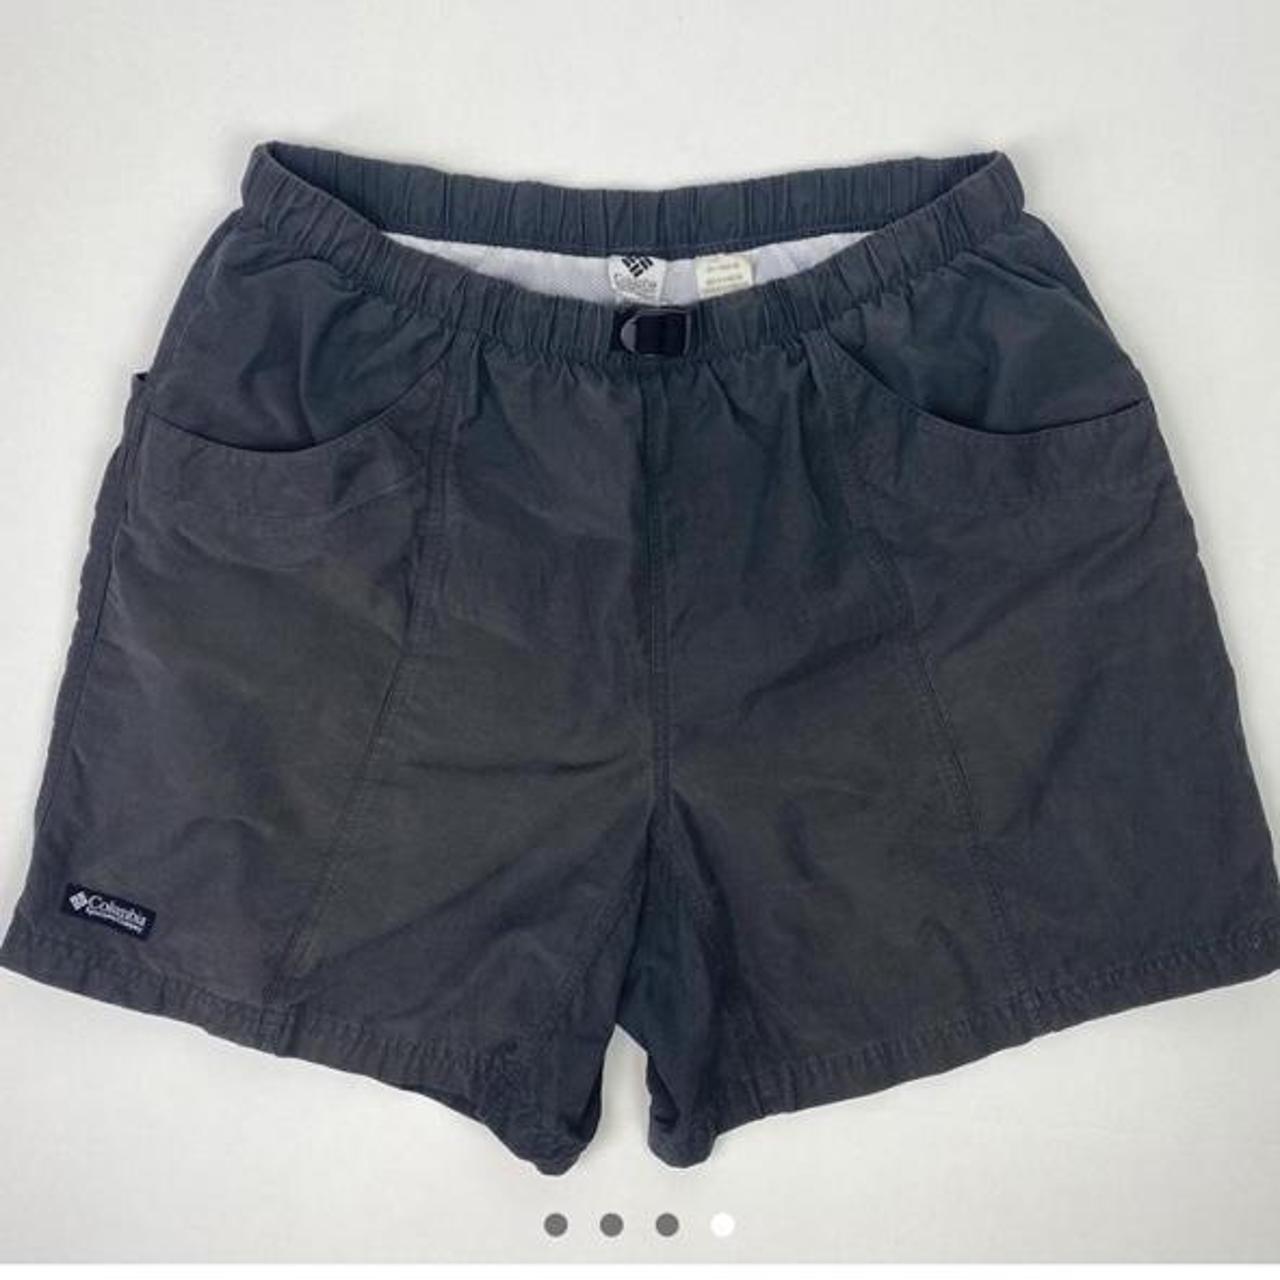 Vintage Columbia shorts Velcro back pockets, built... - Depop